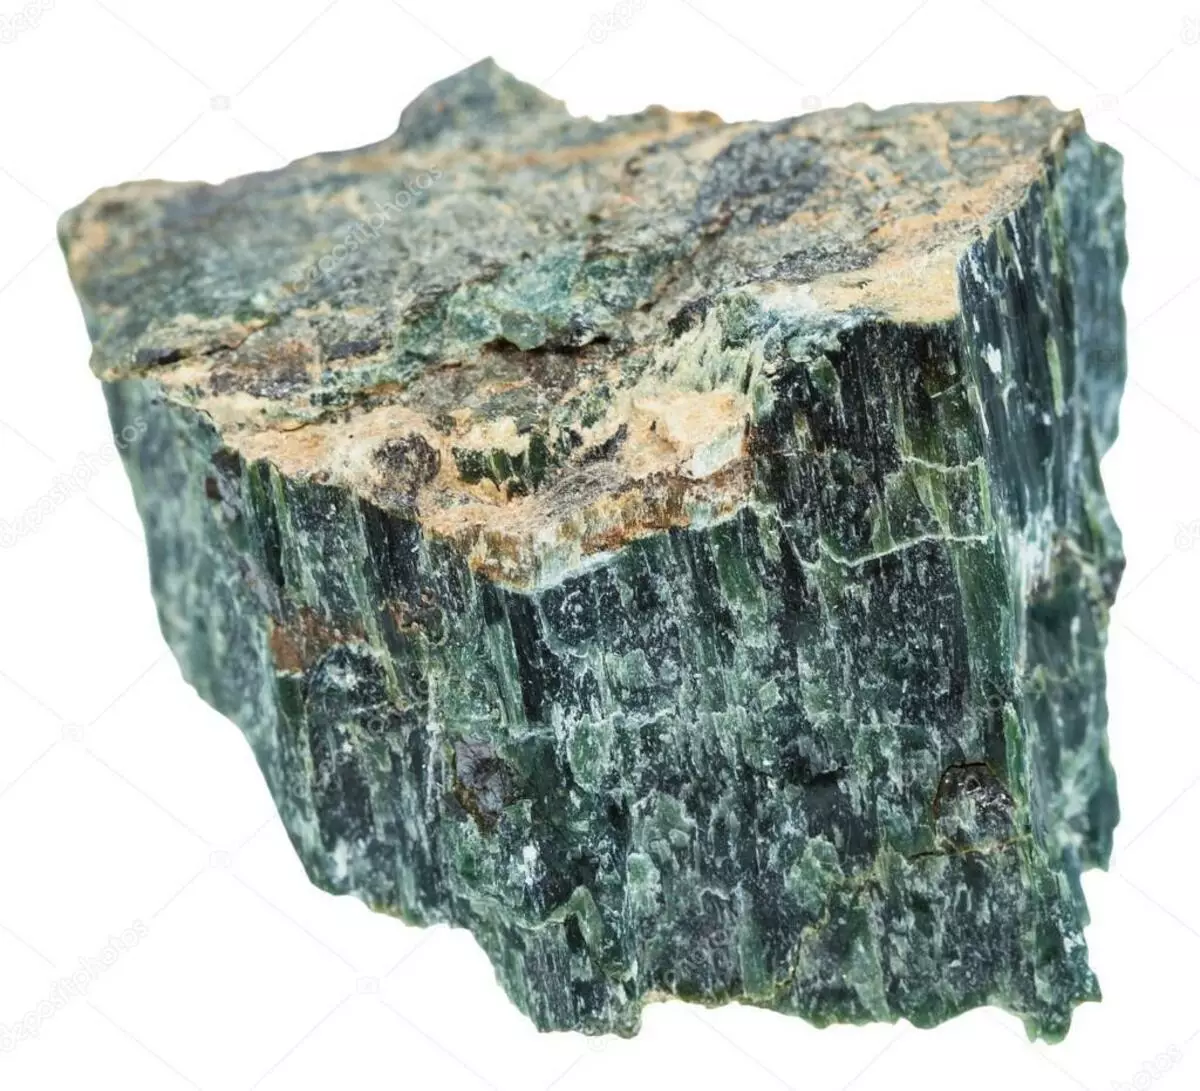 Aktinolithol (19 fotografija): magija i druga svojstva minerala, korištenje kamena 3388_10